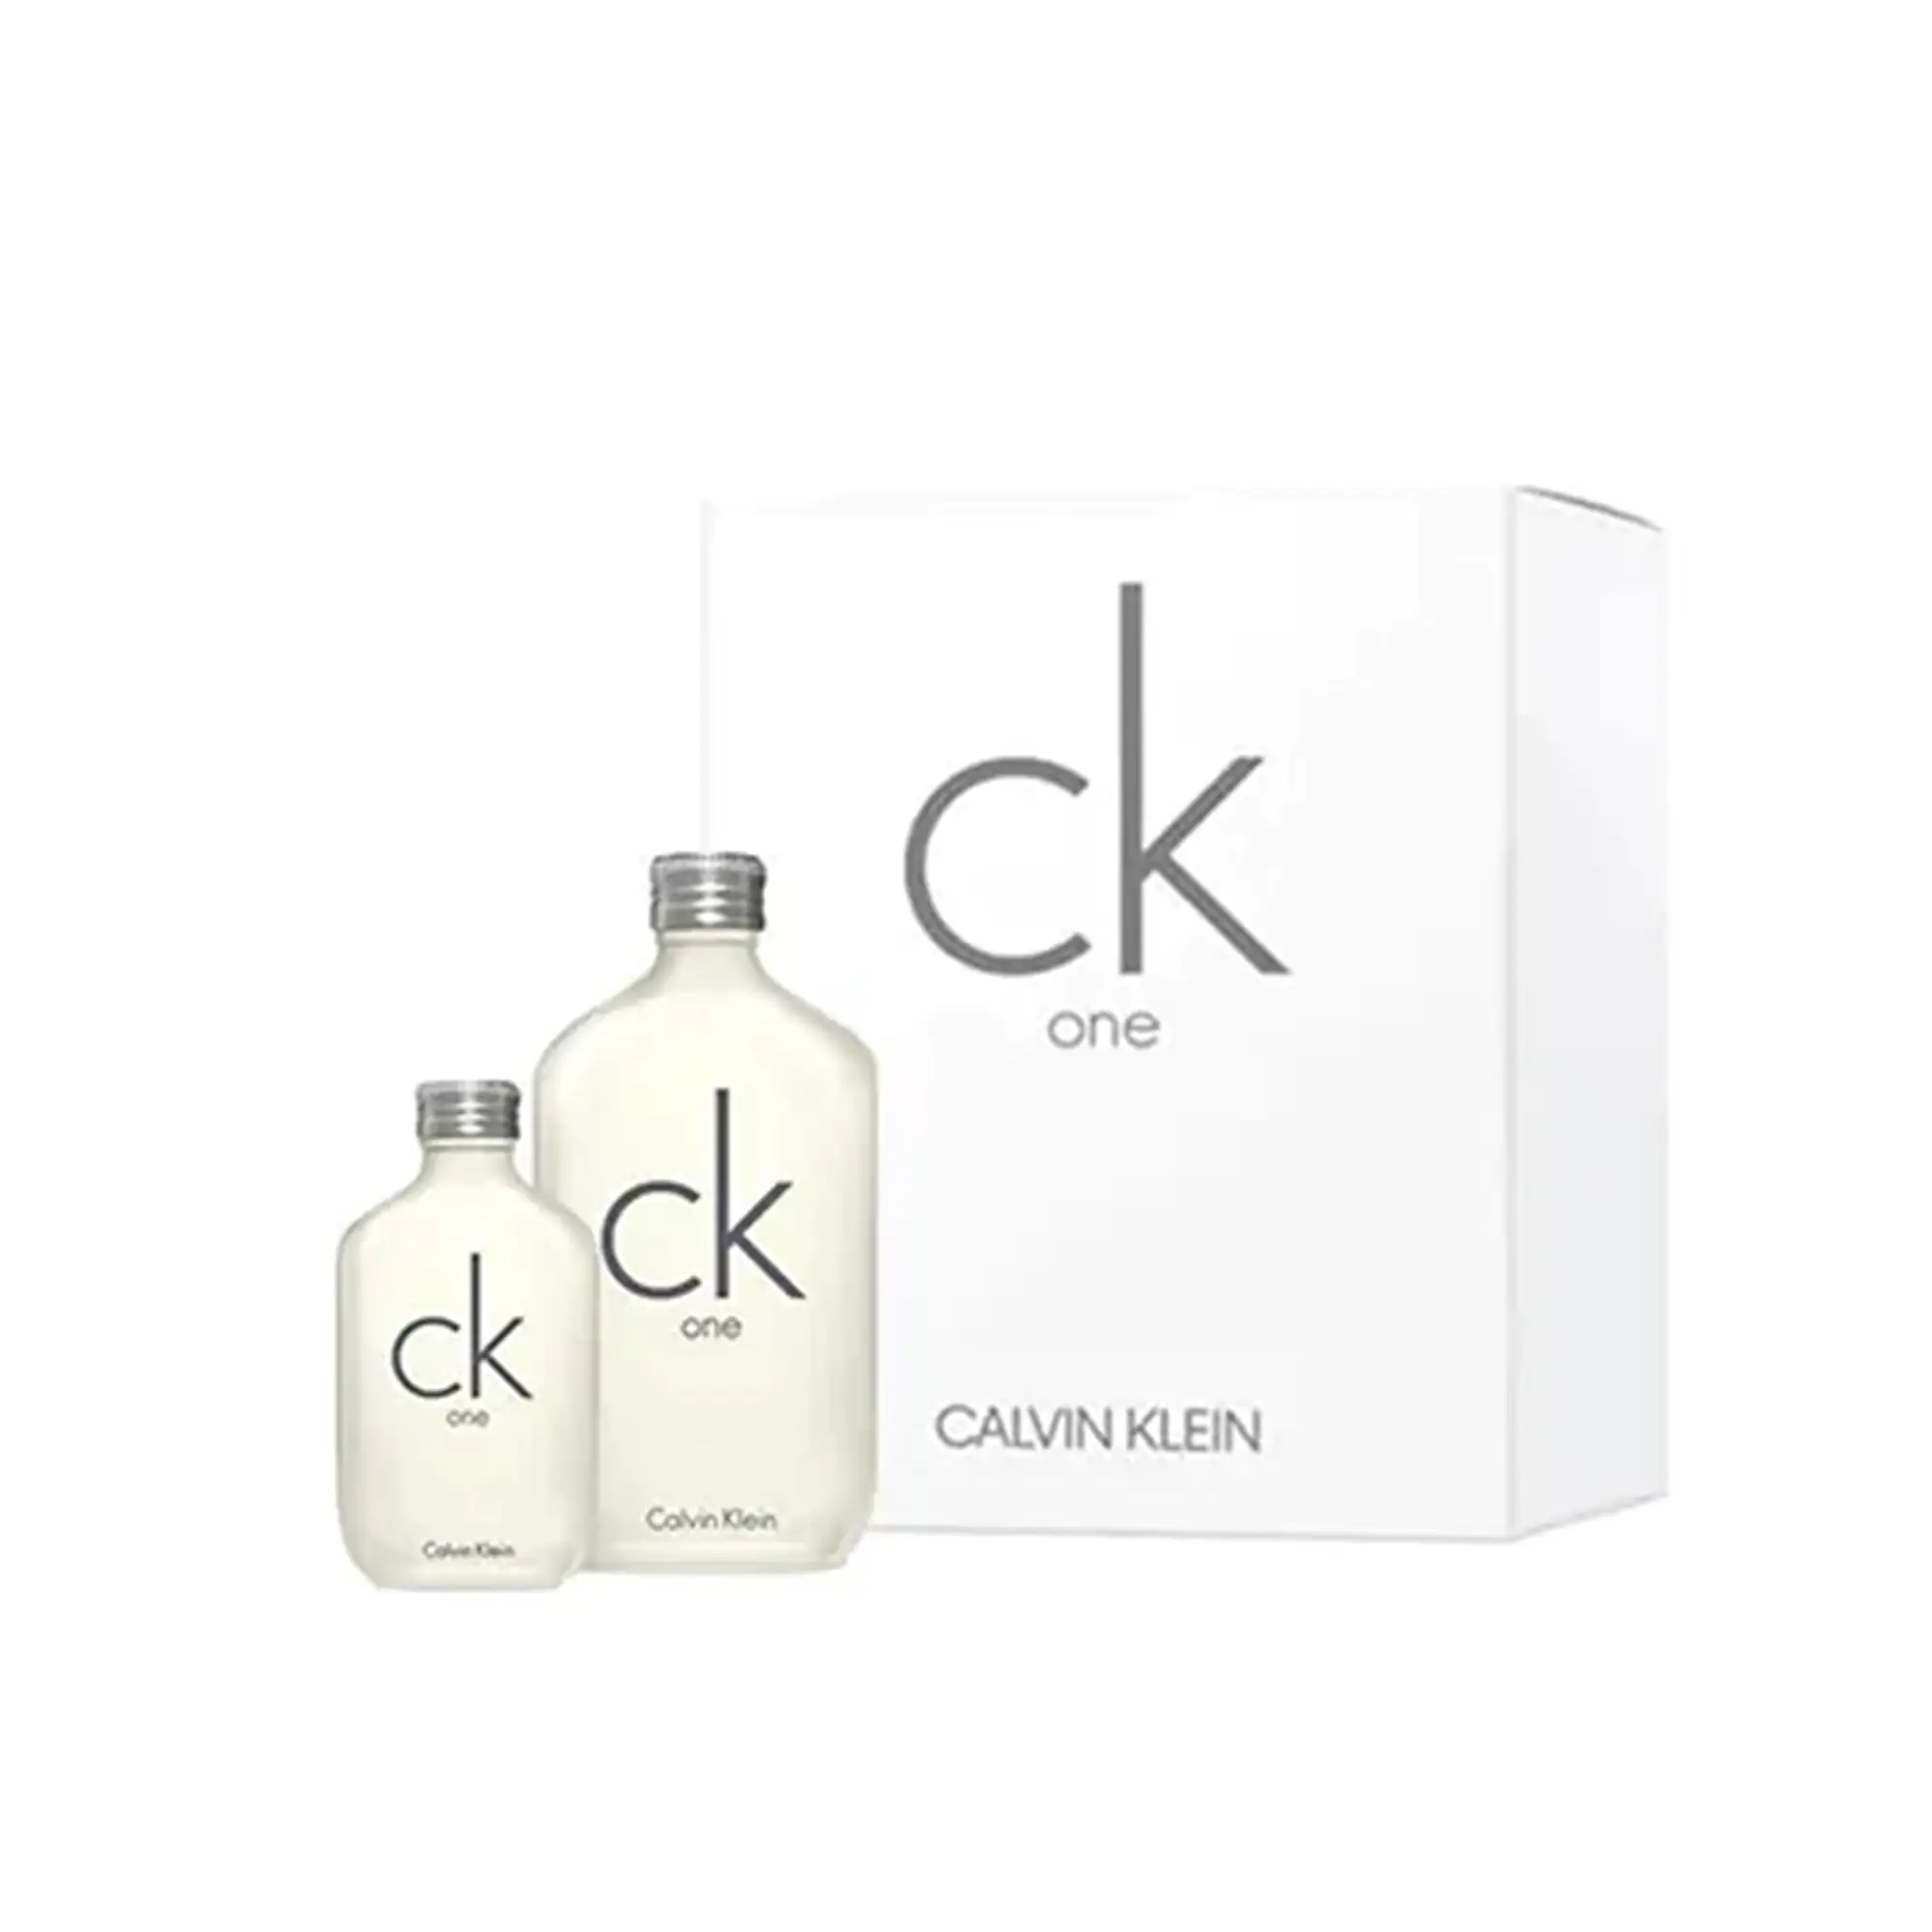 Calvin Klein One Σετ Δώρου Άρωμα EDT 200ml + 50ml